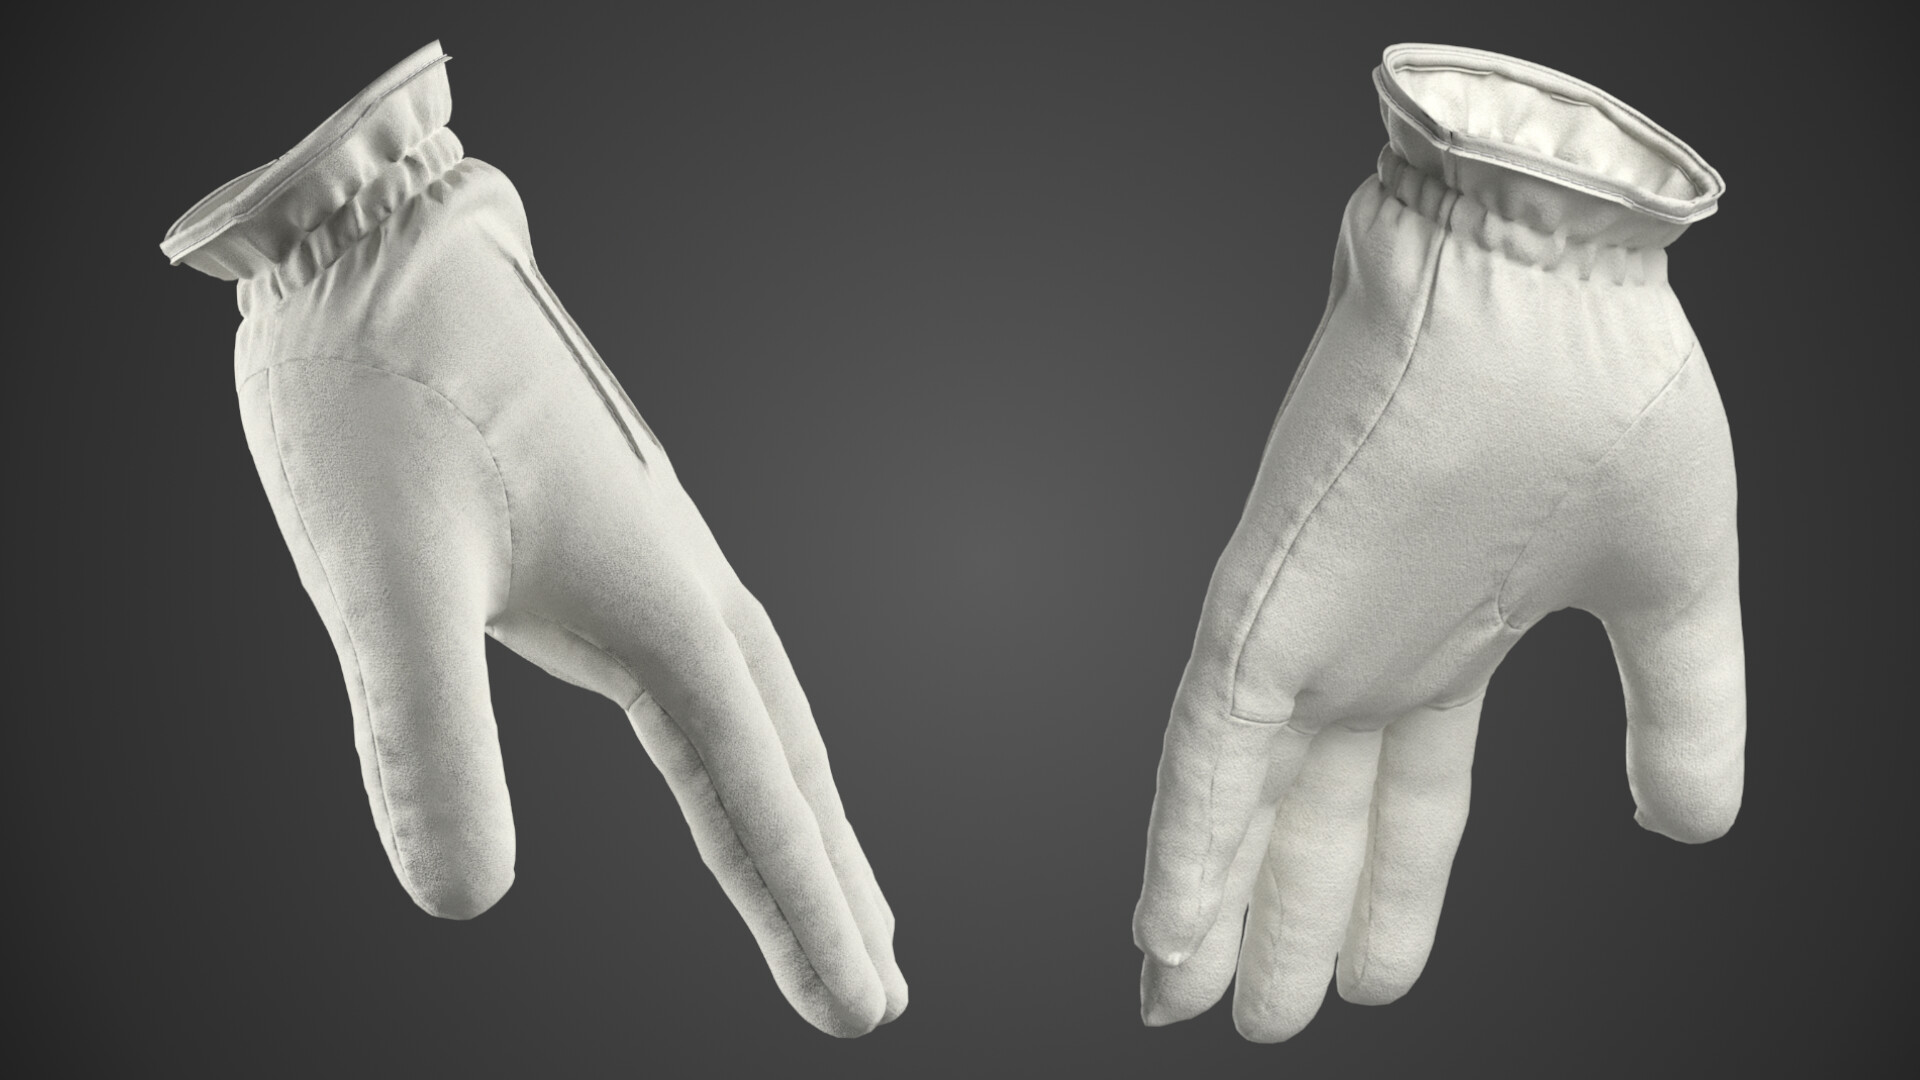 ArtStation - Winter Soldier Hand Gloves. Chrome Platinum Silicone.